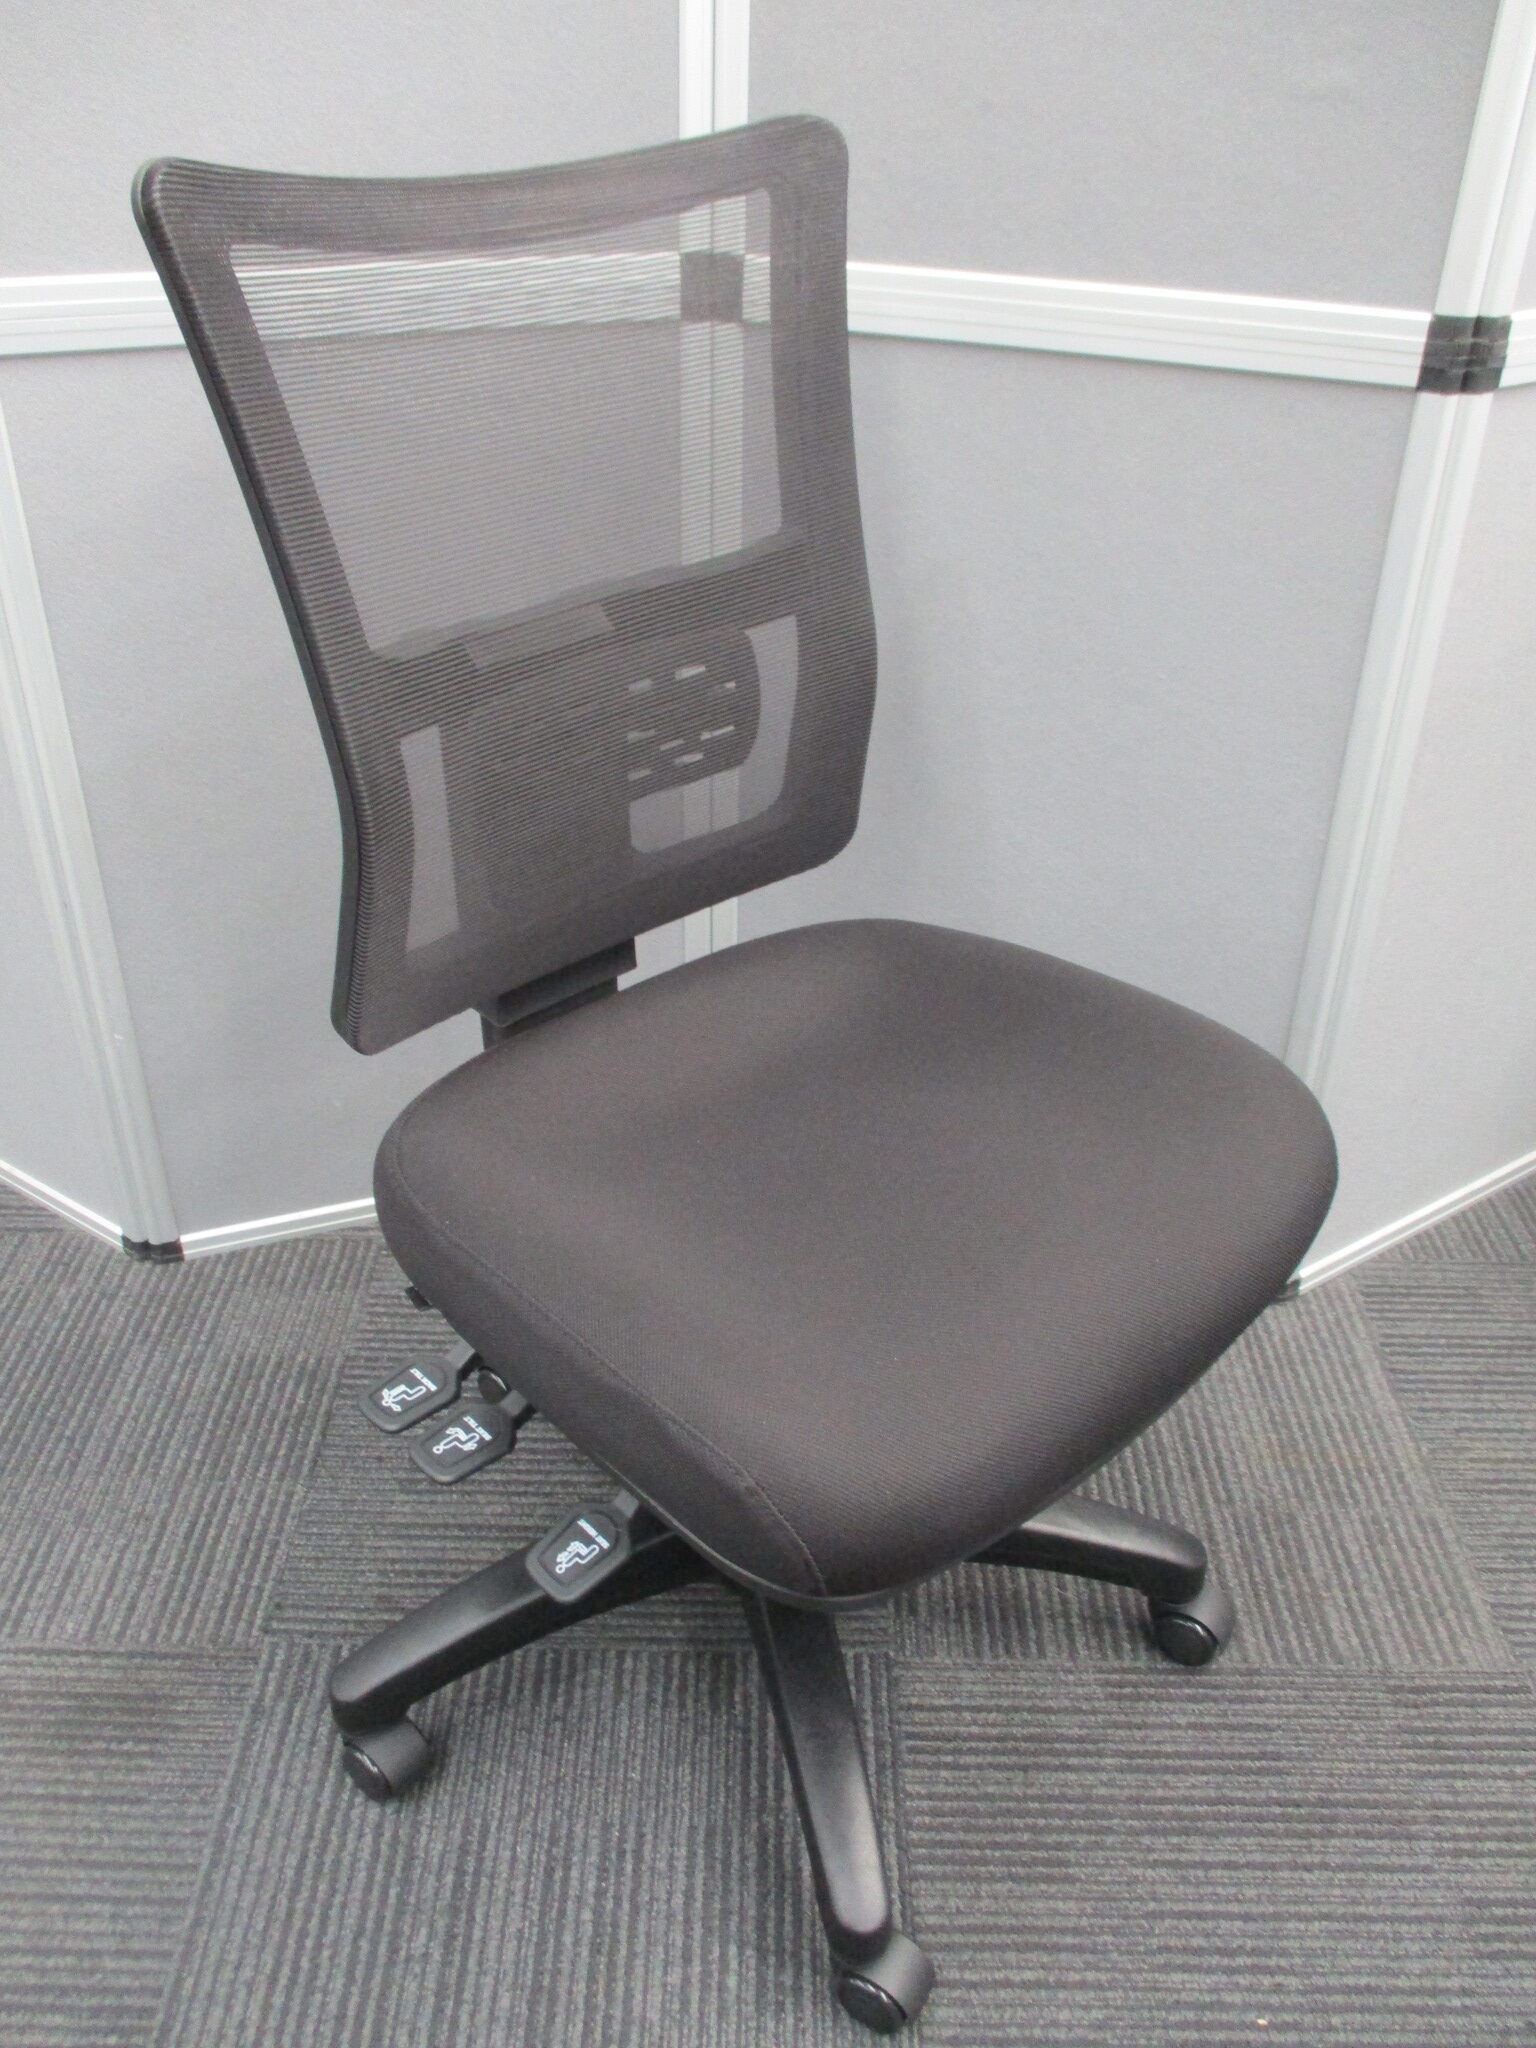 New Brent Ergonomic Chairs $450